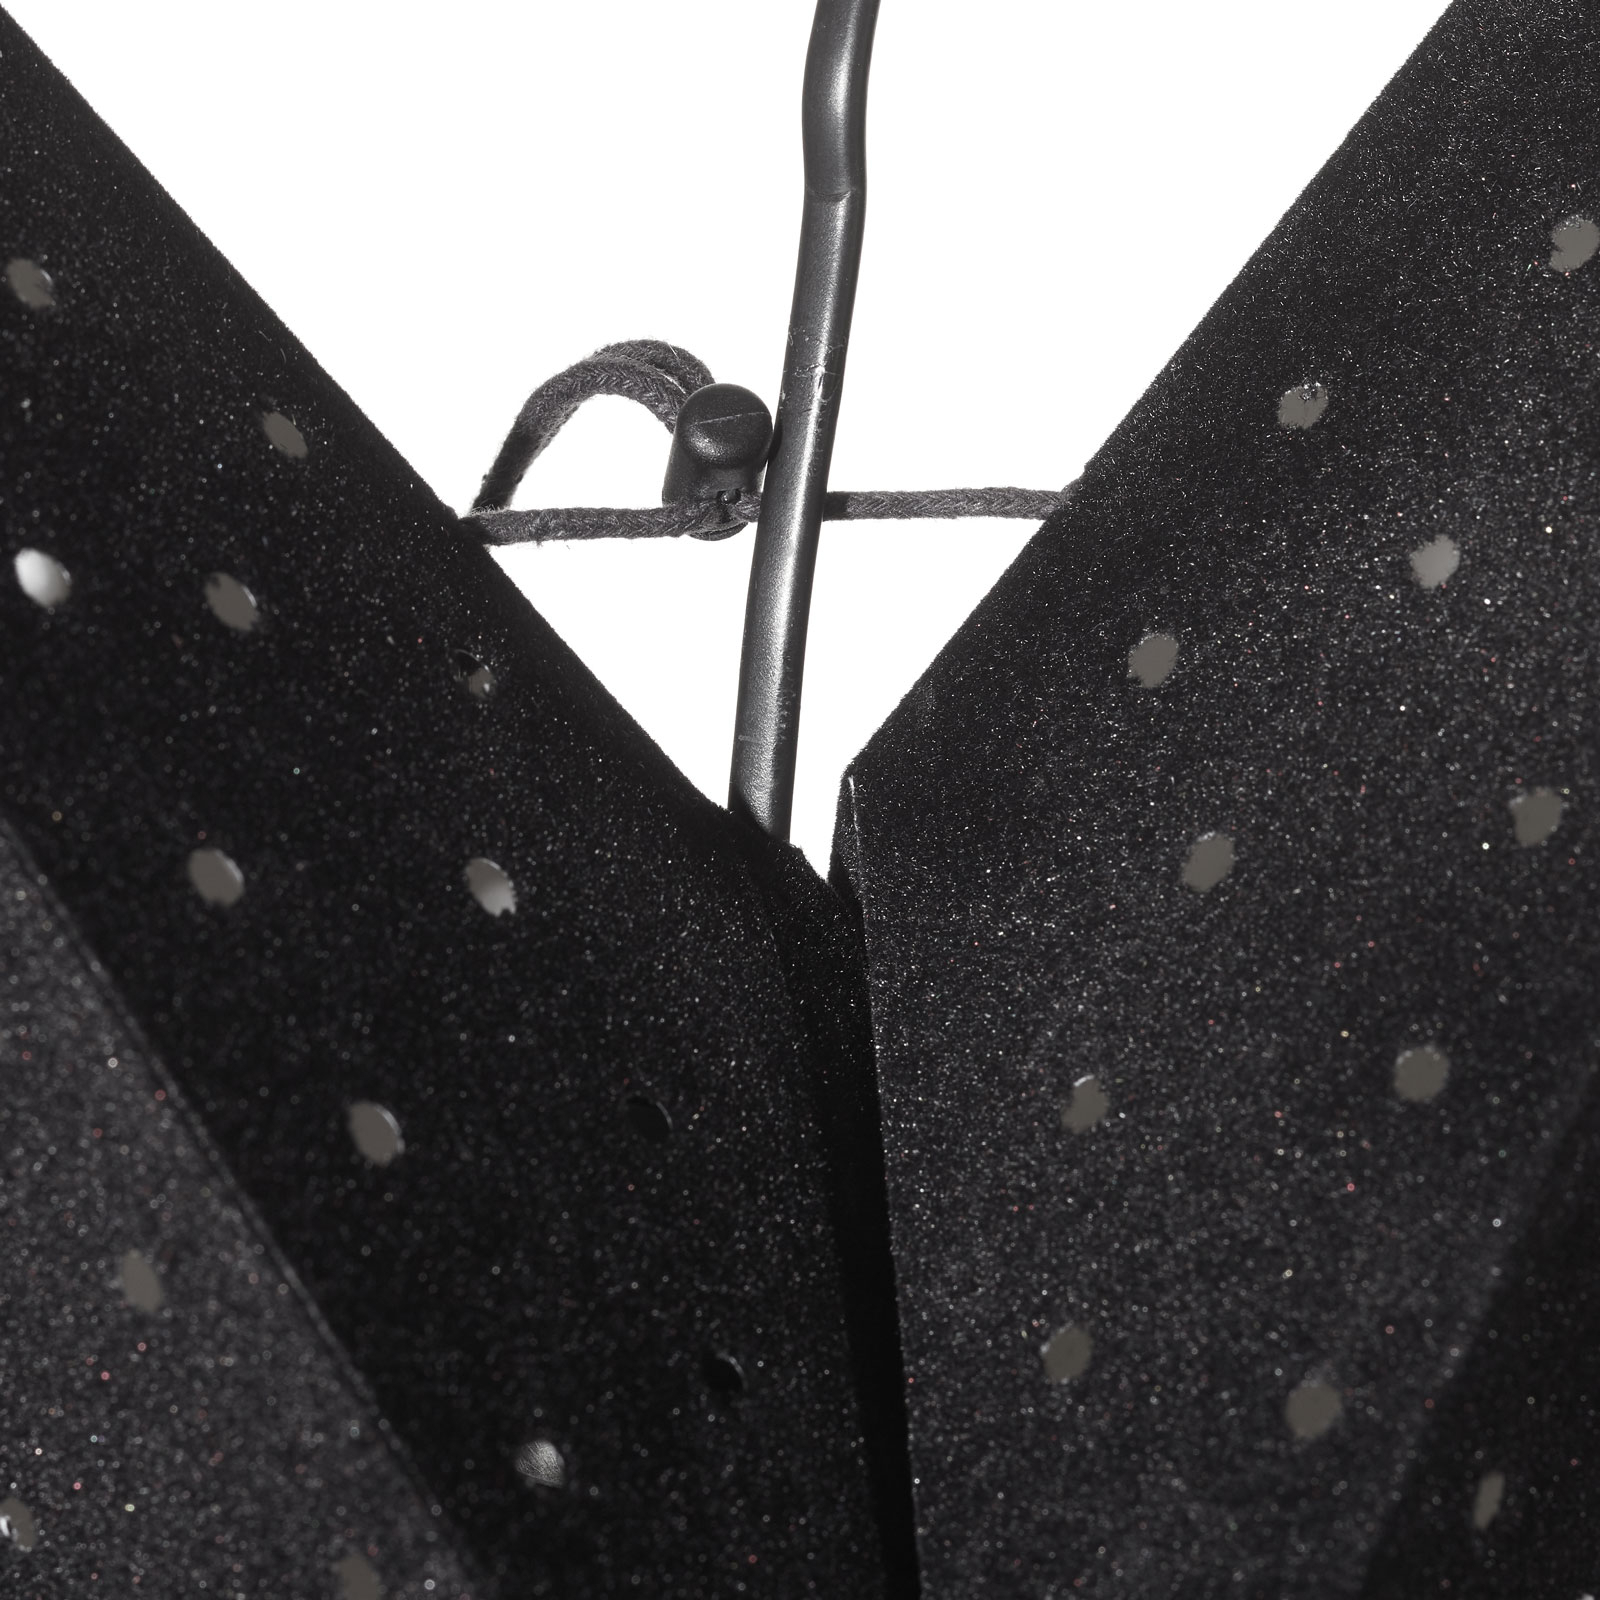 Αστέρι Clara για κρέμασμα, βελούδινη εμφάνιση Ø 75 cm, μαύρο